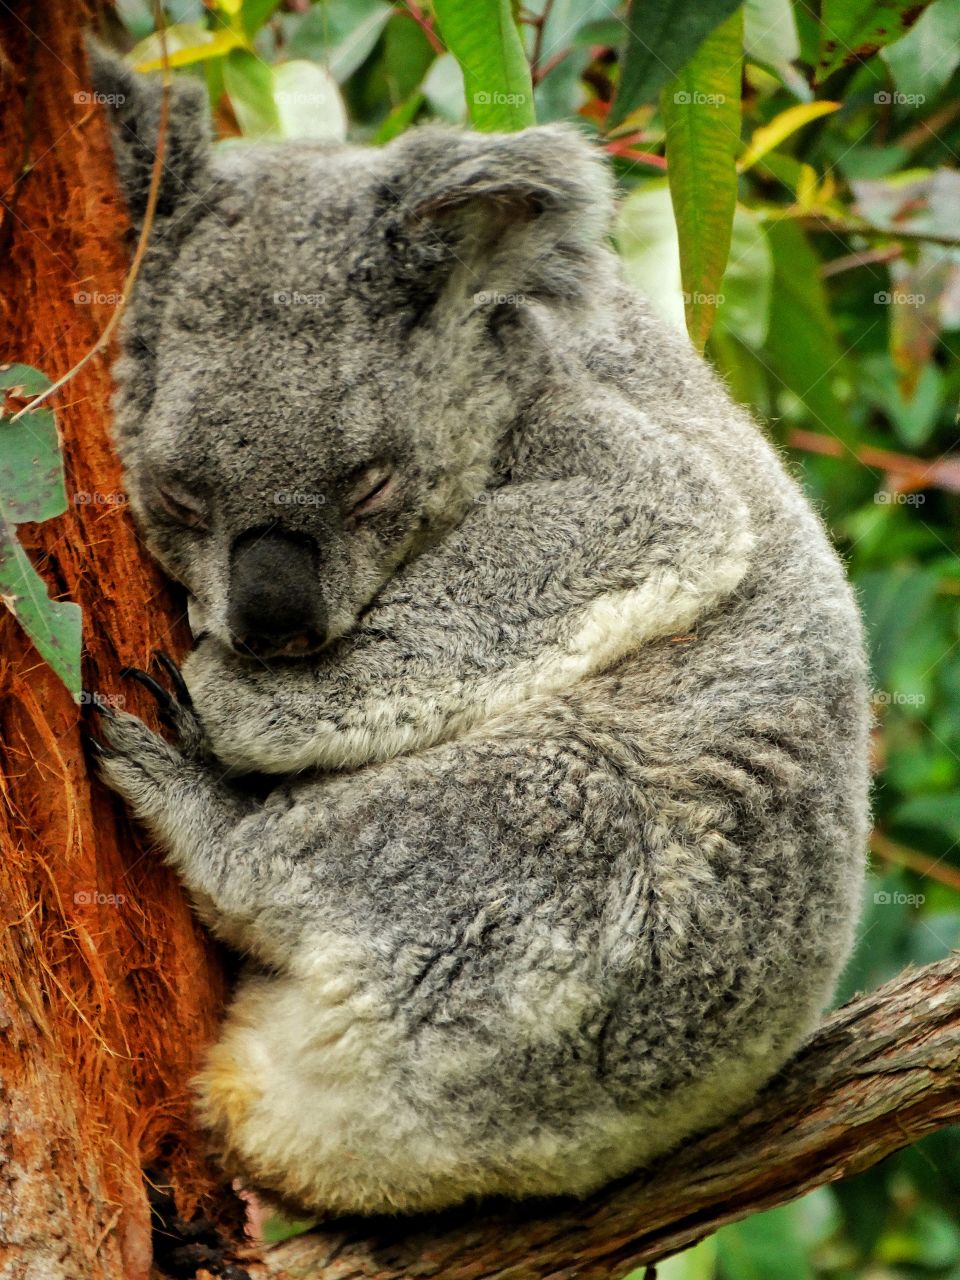 Koala In Eucalyptus Tree
